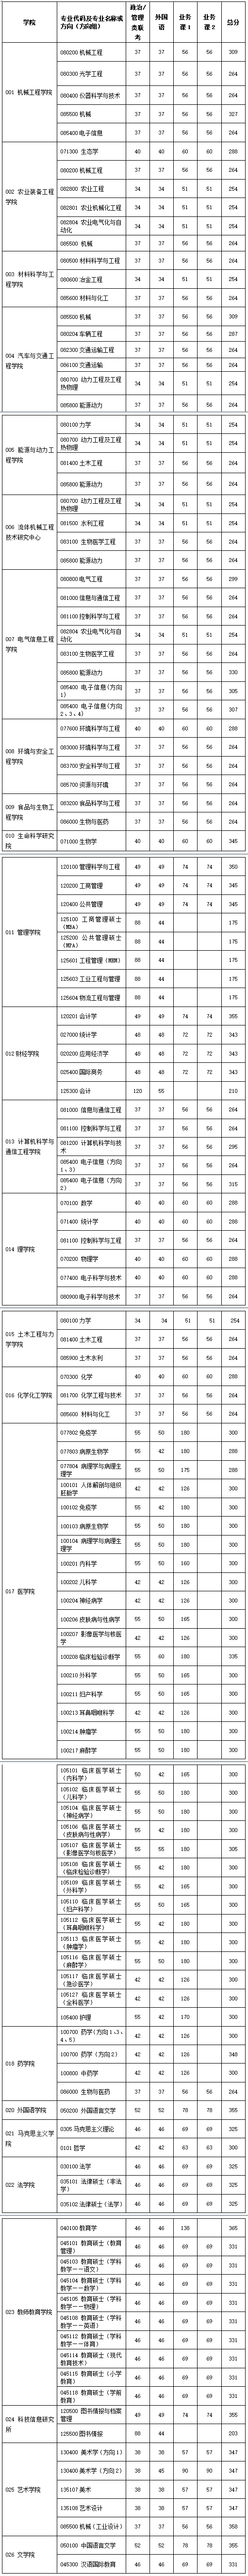 2020年江苏大学硕士研究生复试分数线及报考录取情况表